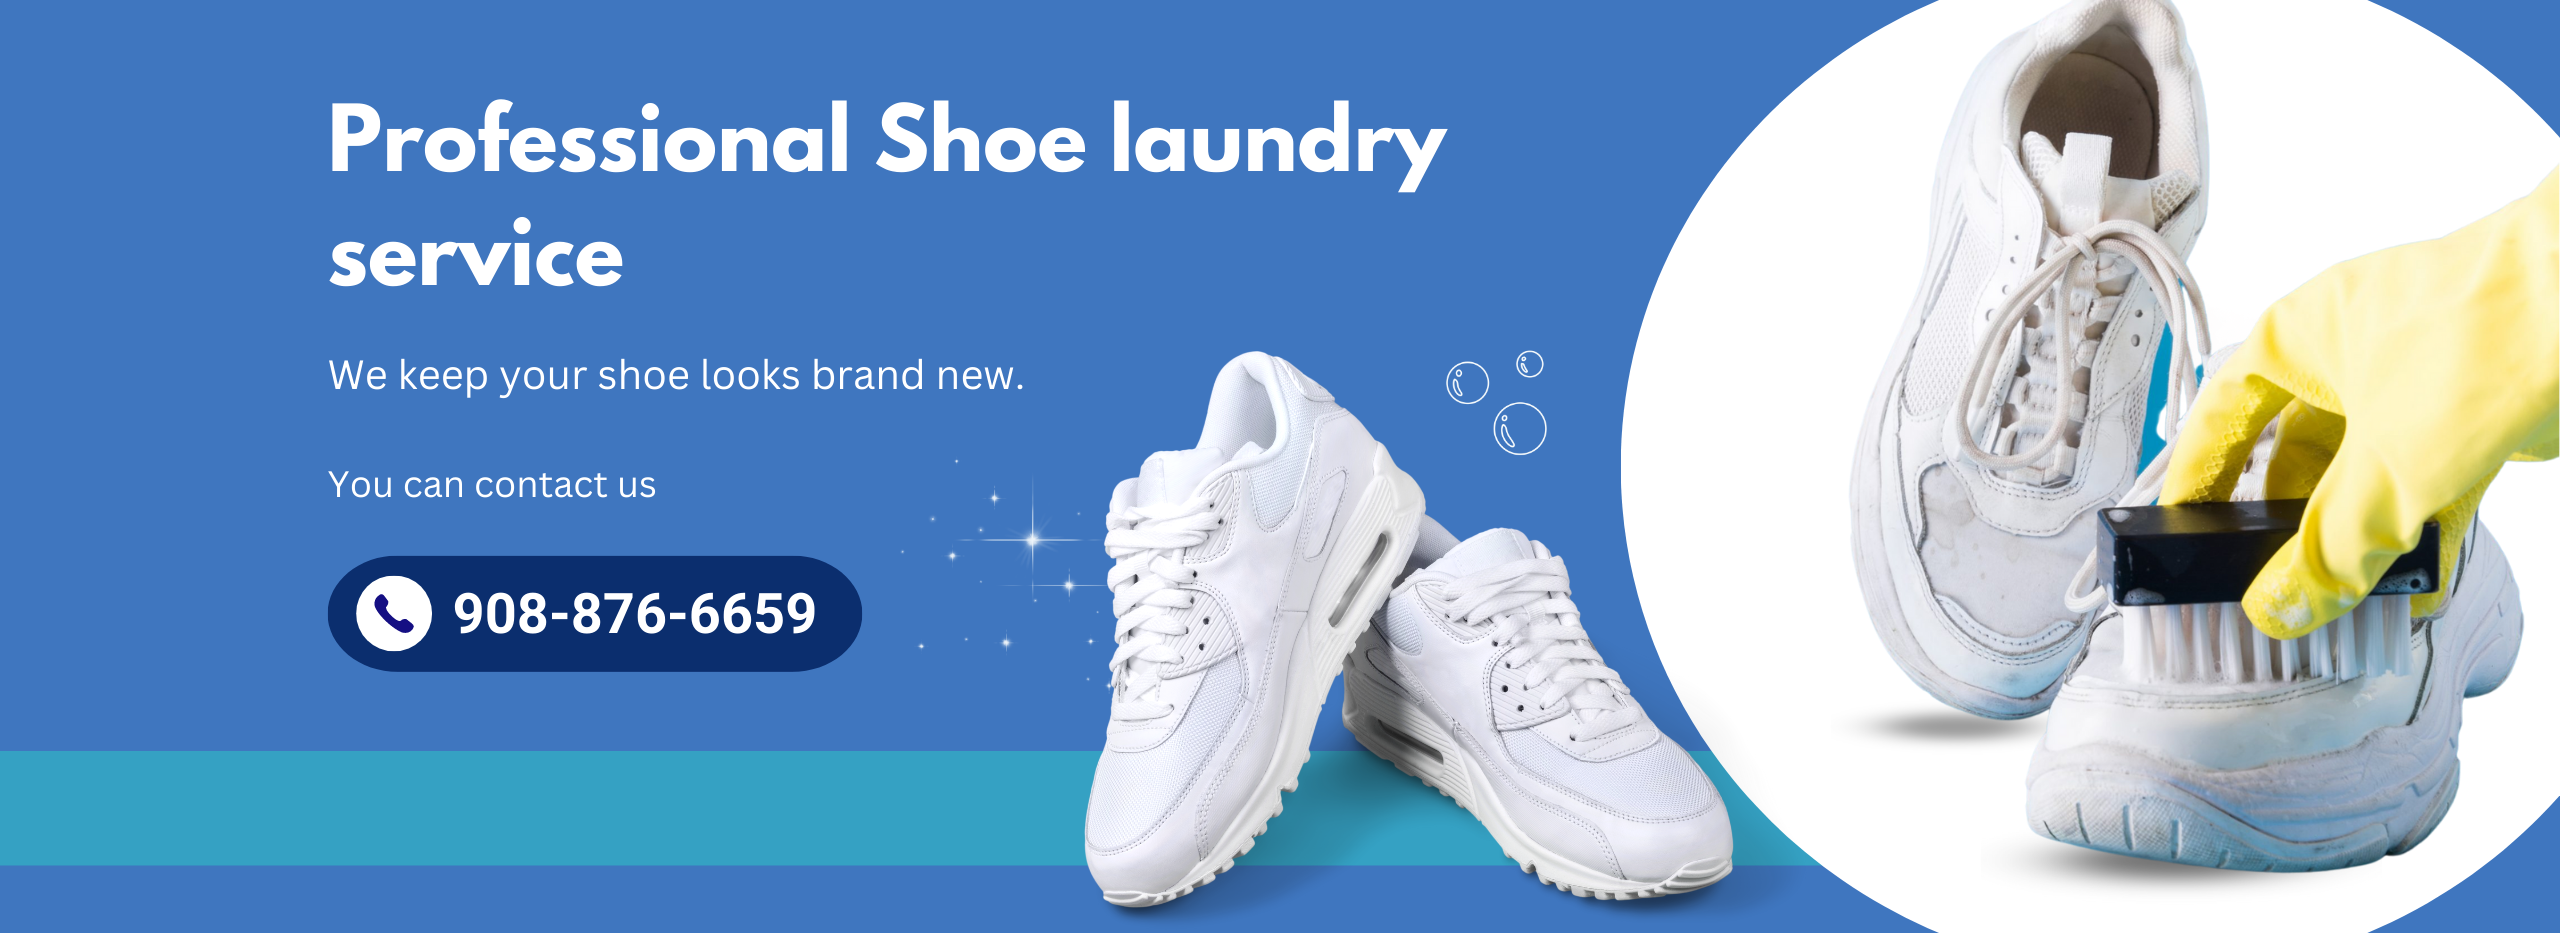 Shoe laundry